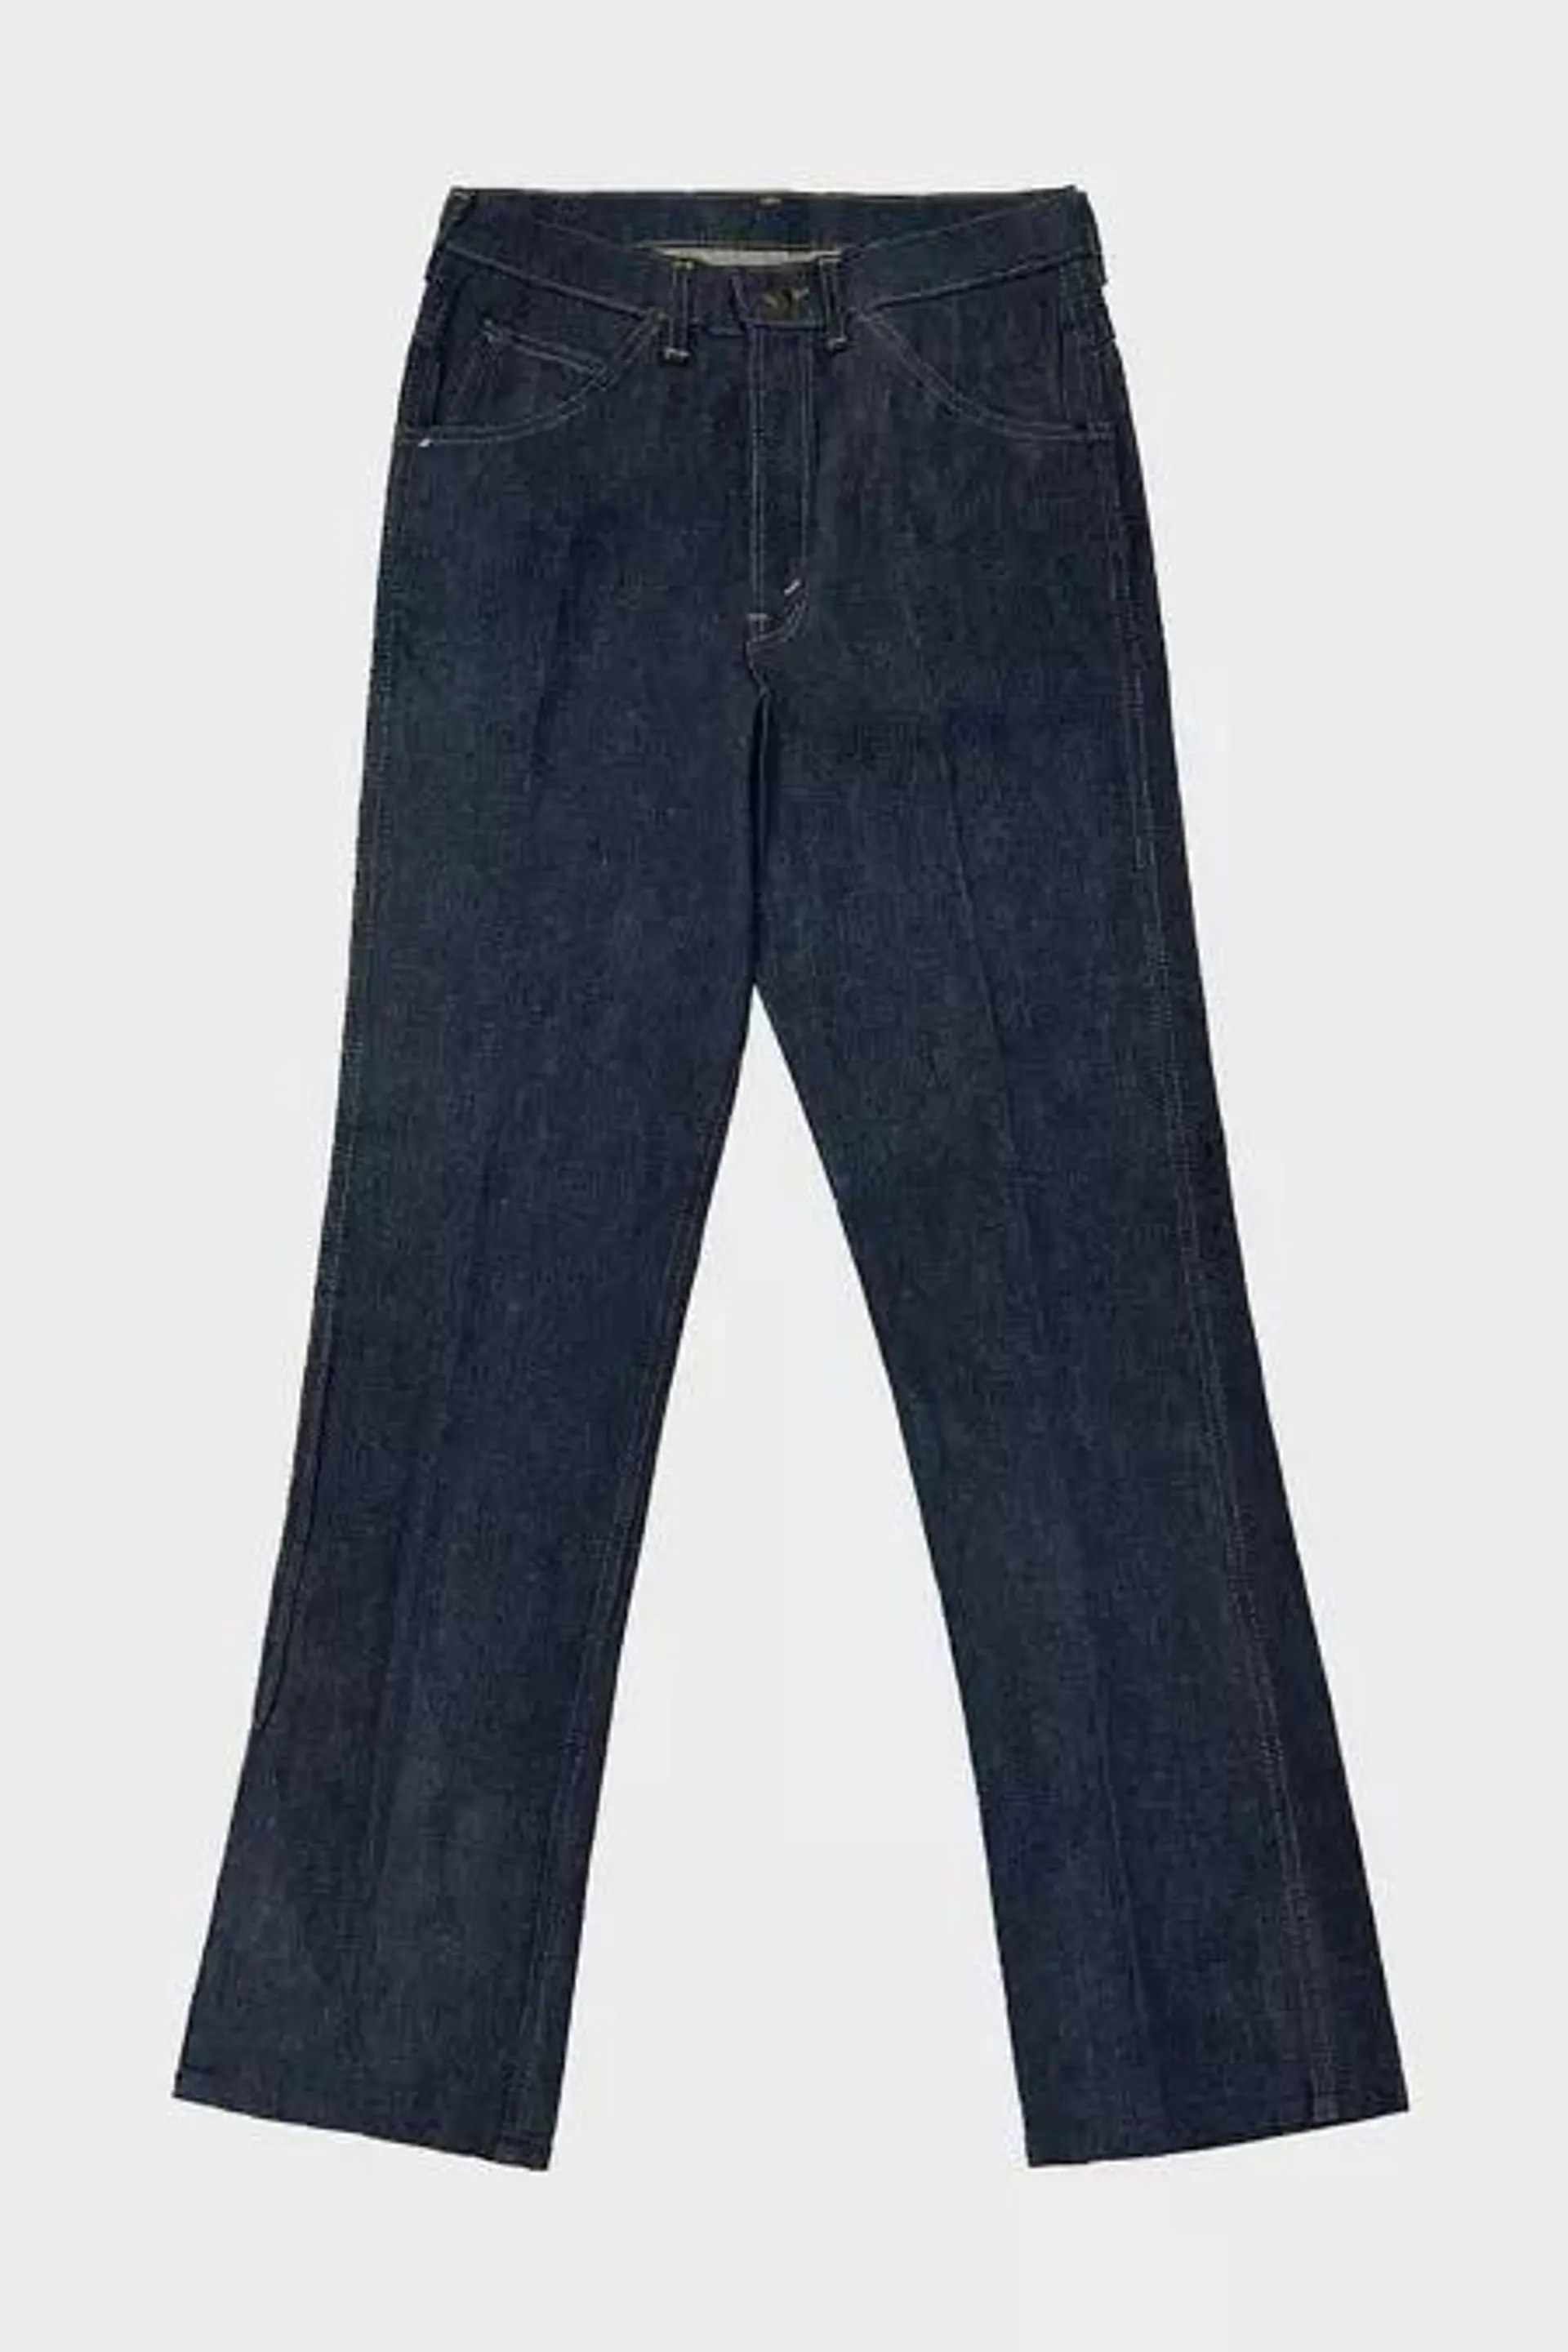 Vintage 1970’s Deadstock Deecee Straight Leg Western USA Bootcut Raw Denim Jeans